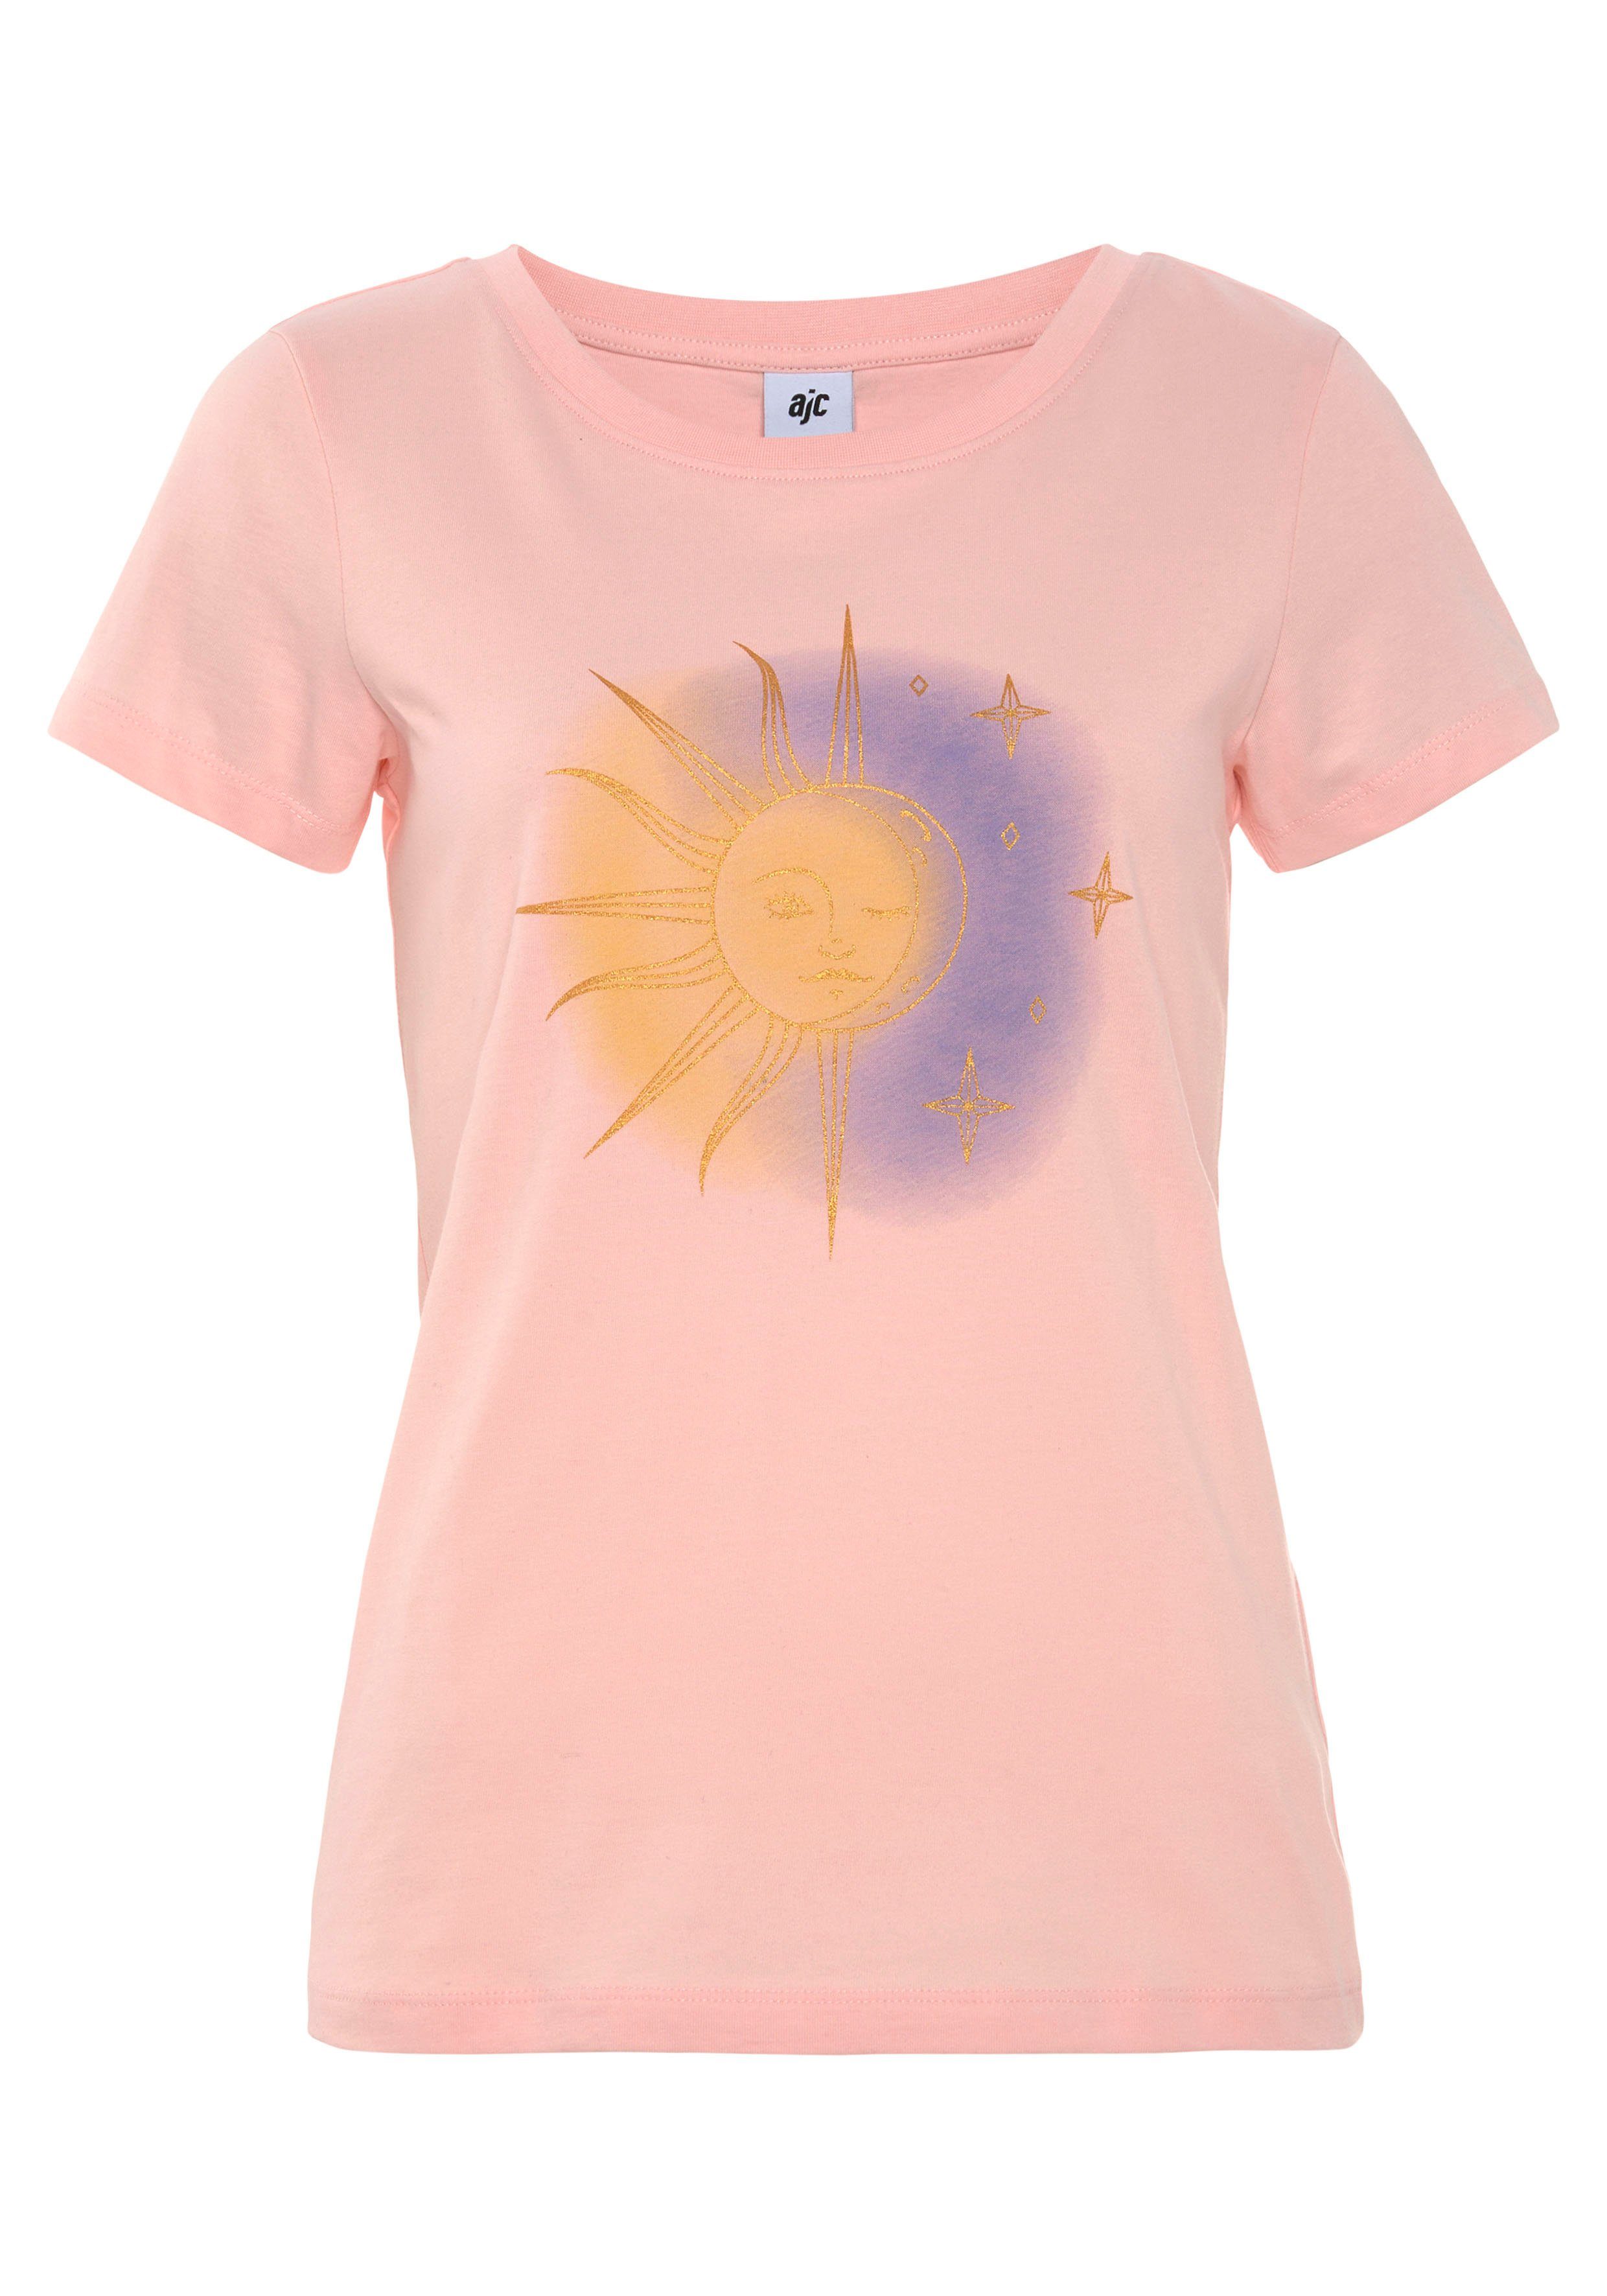 AJC Print-Shirt in verschiedenen rosa Designs modischen